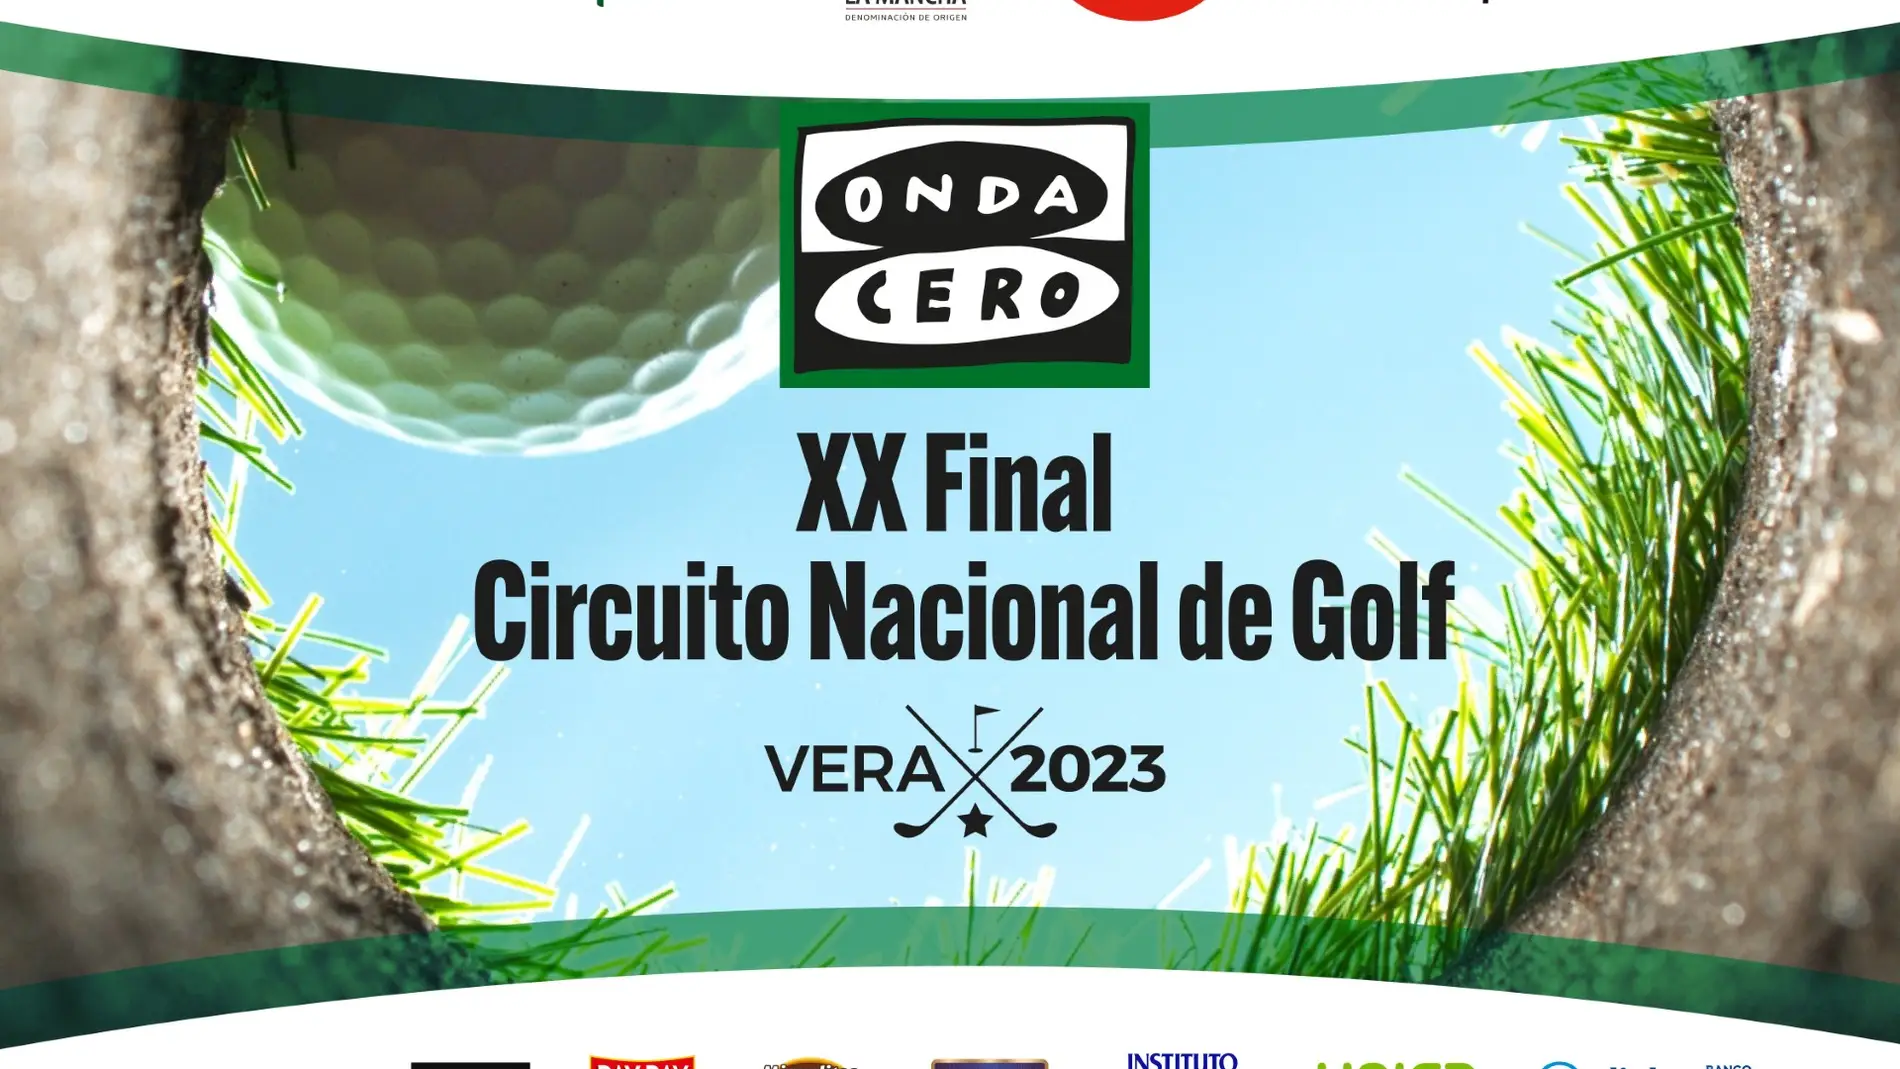 XX Final Circuito Nacional de Golf